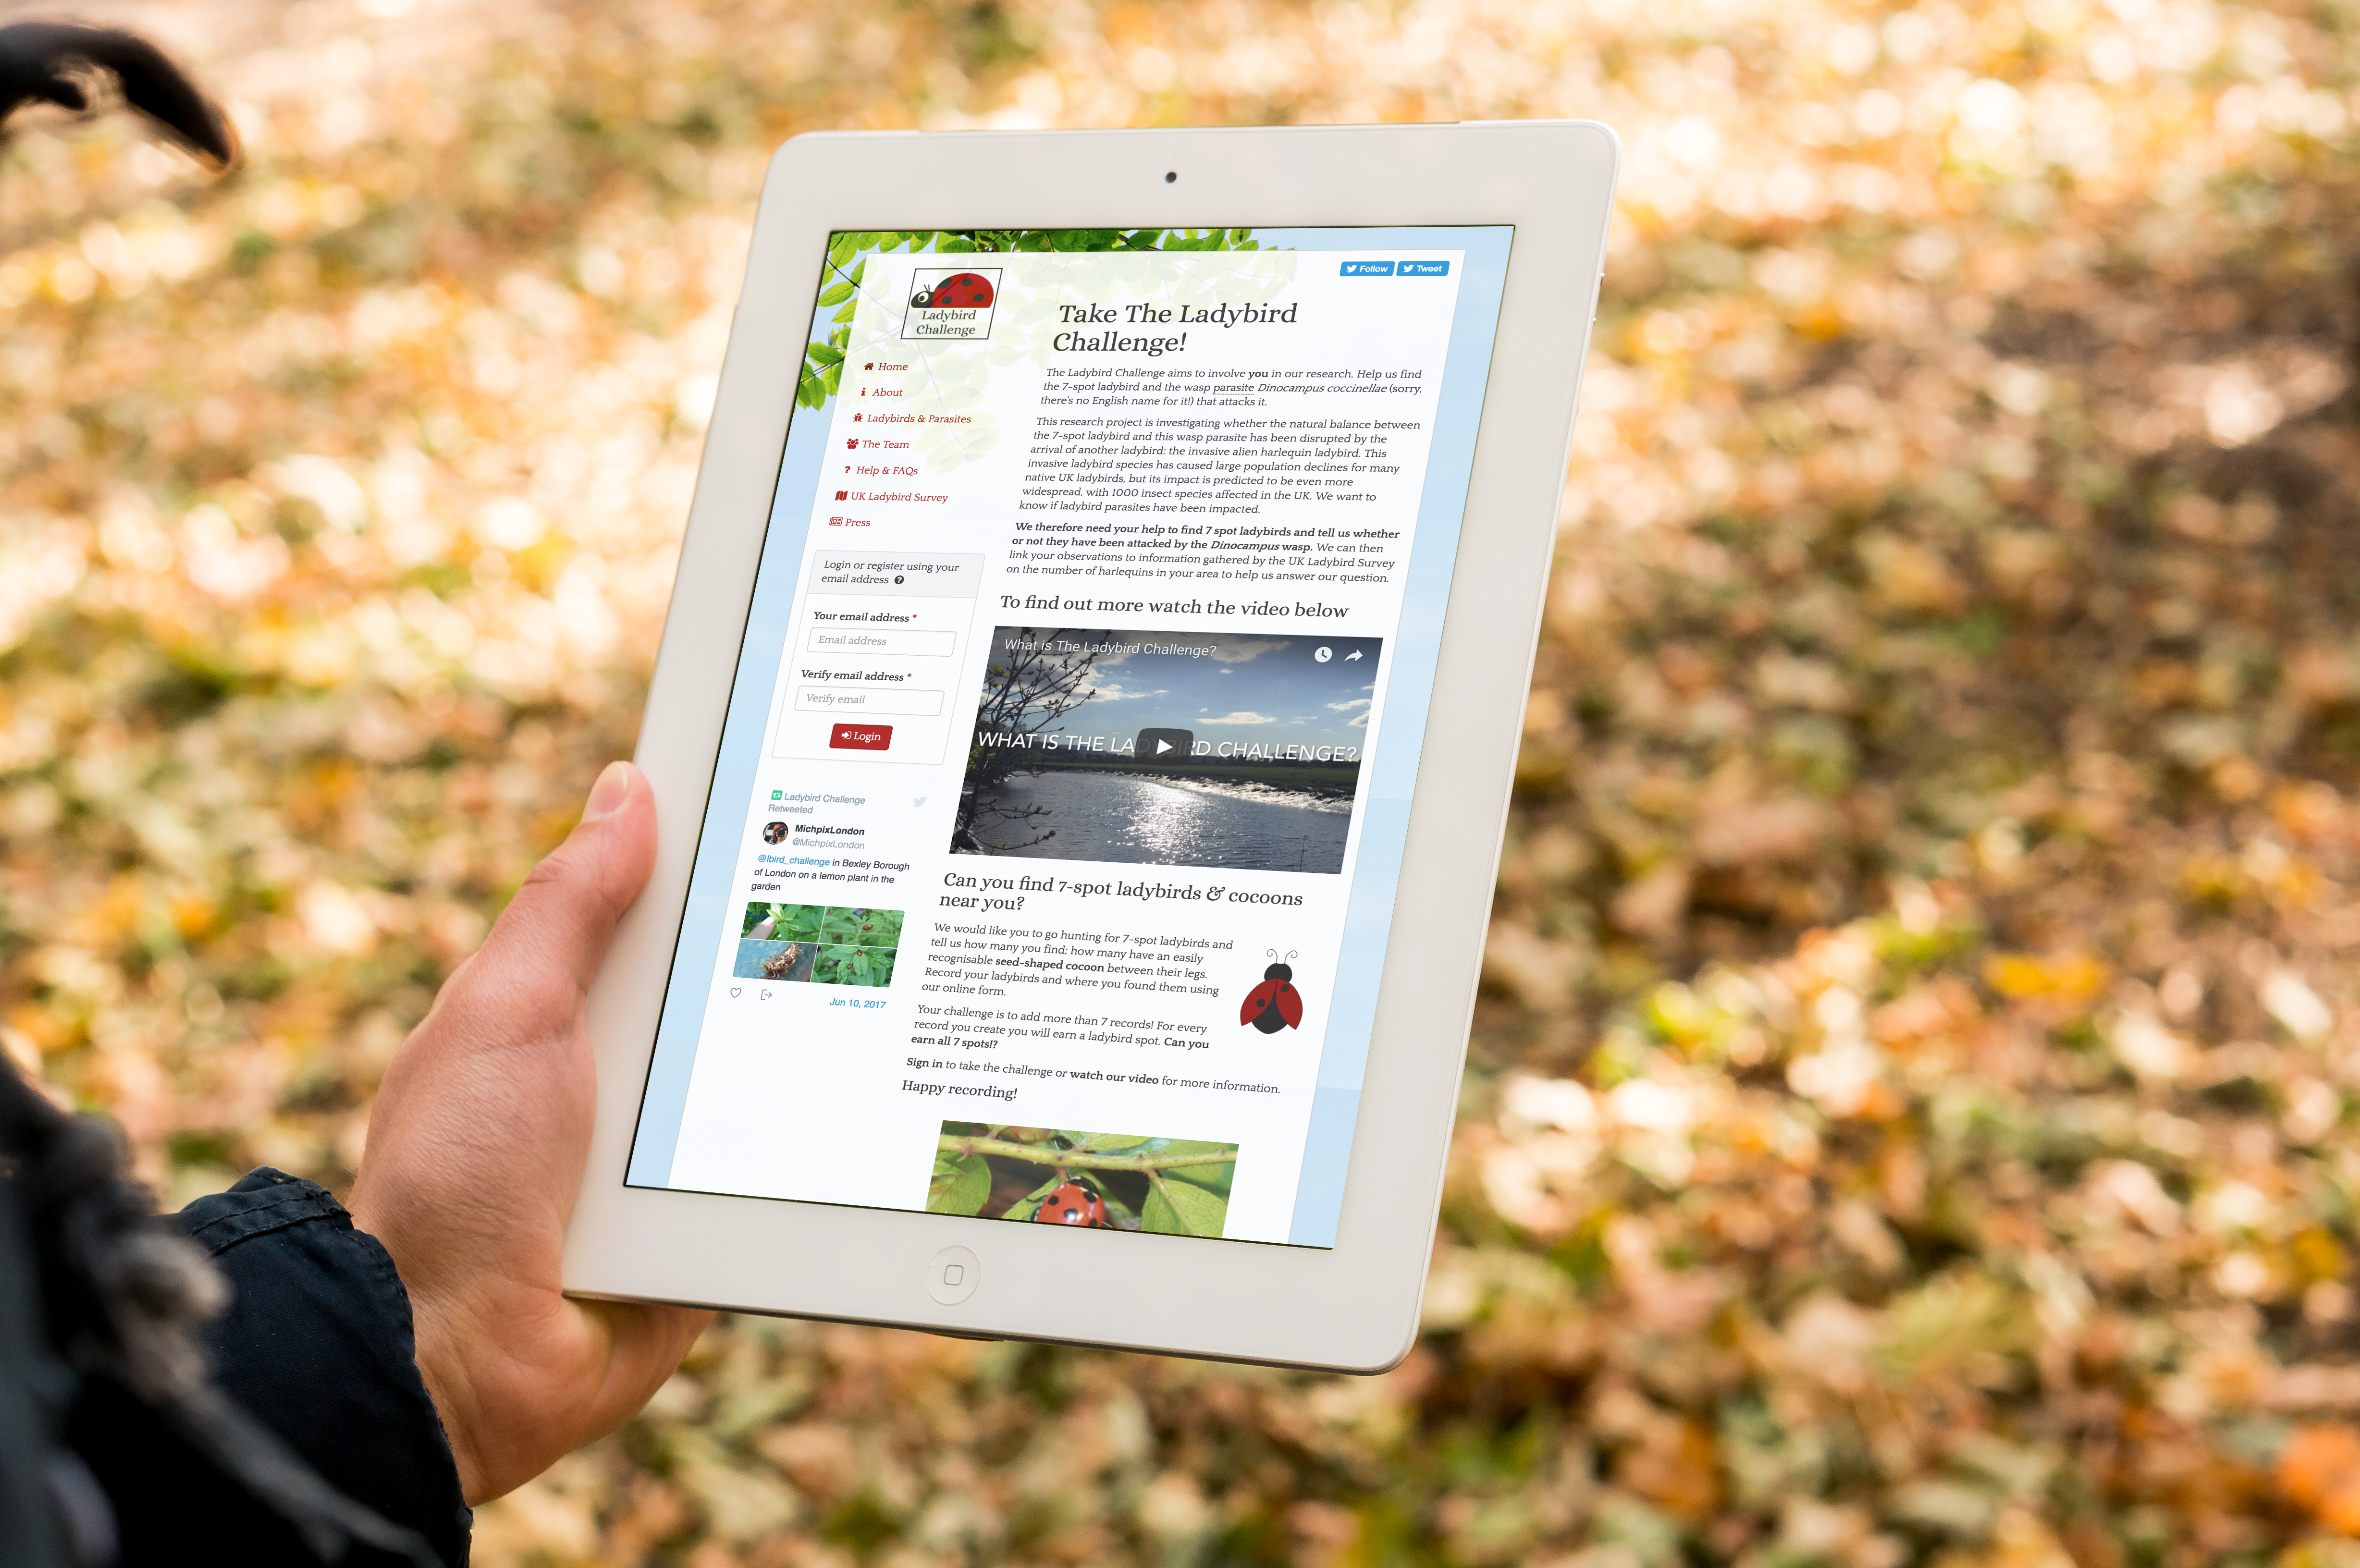 Ladybird challenge on iPad